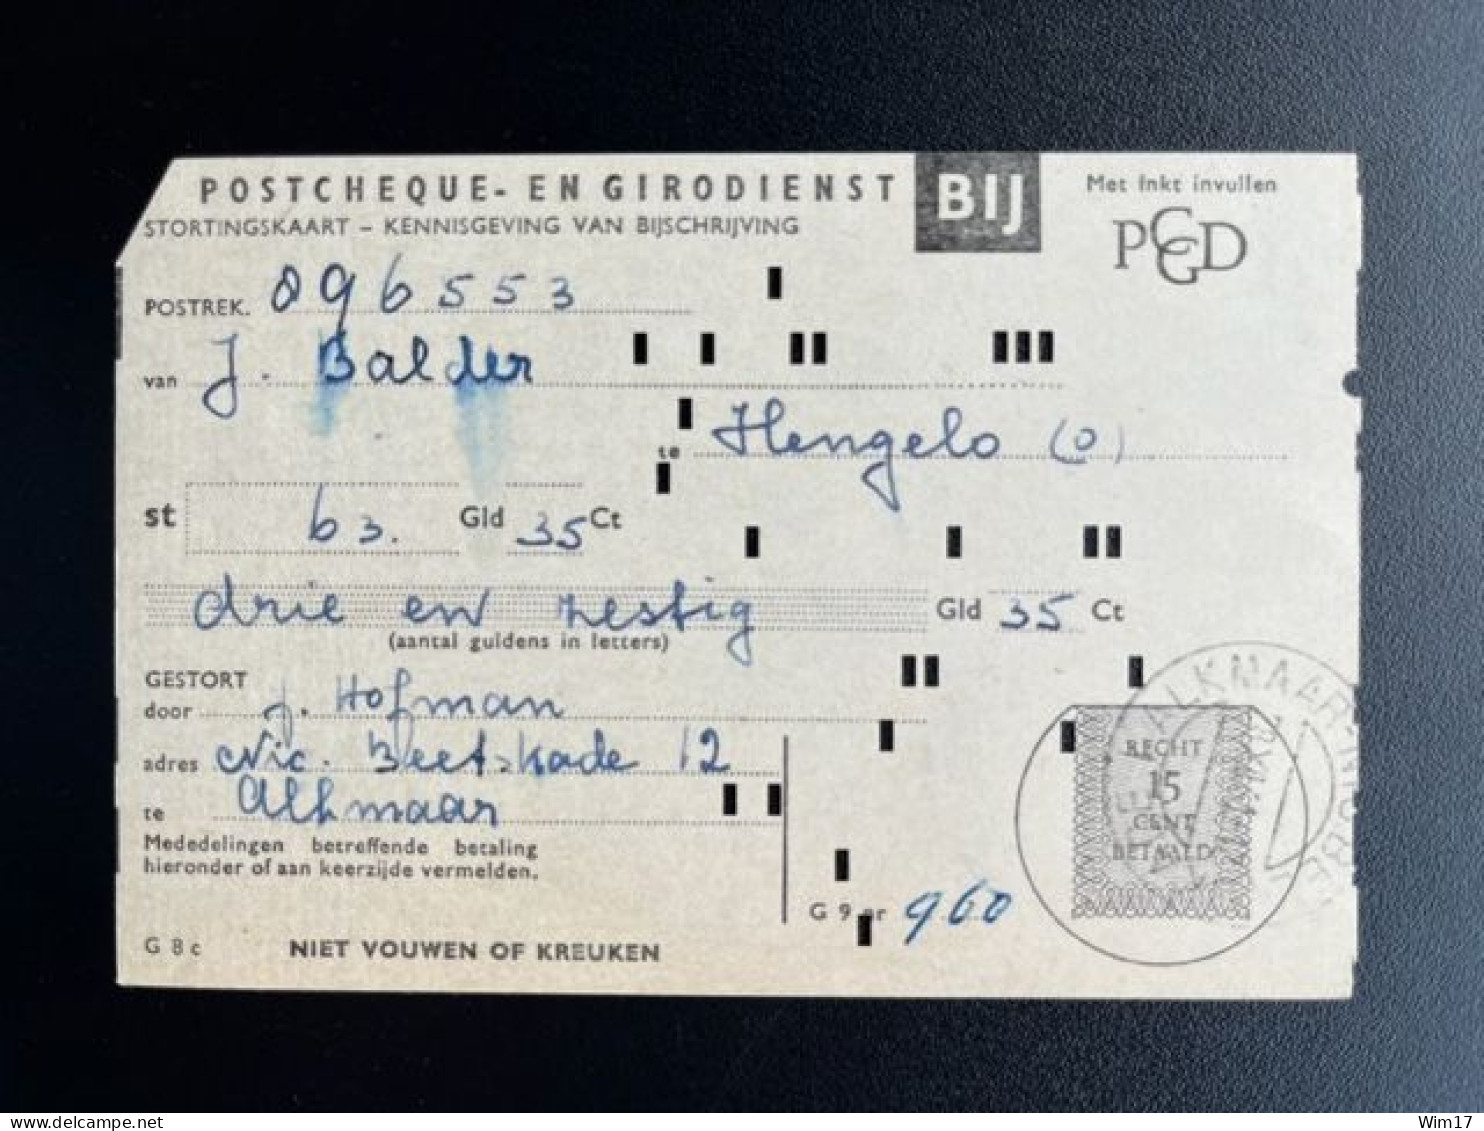 NETHERLANDS 1961 ALKMAAR 28-12-1961 PAYMENT RECEIPT POSTGIRO NEDERLAND ACCEPTGIRO STORTINGSRECHT - Covers & Documents